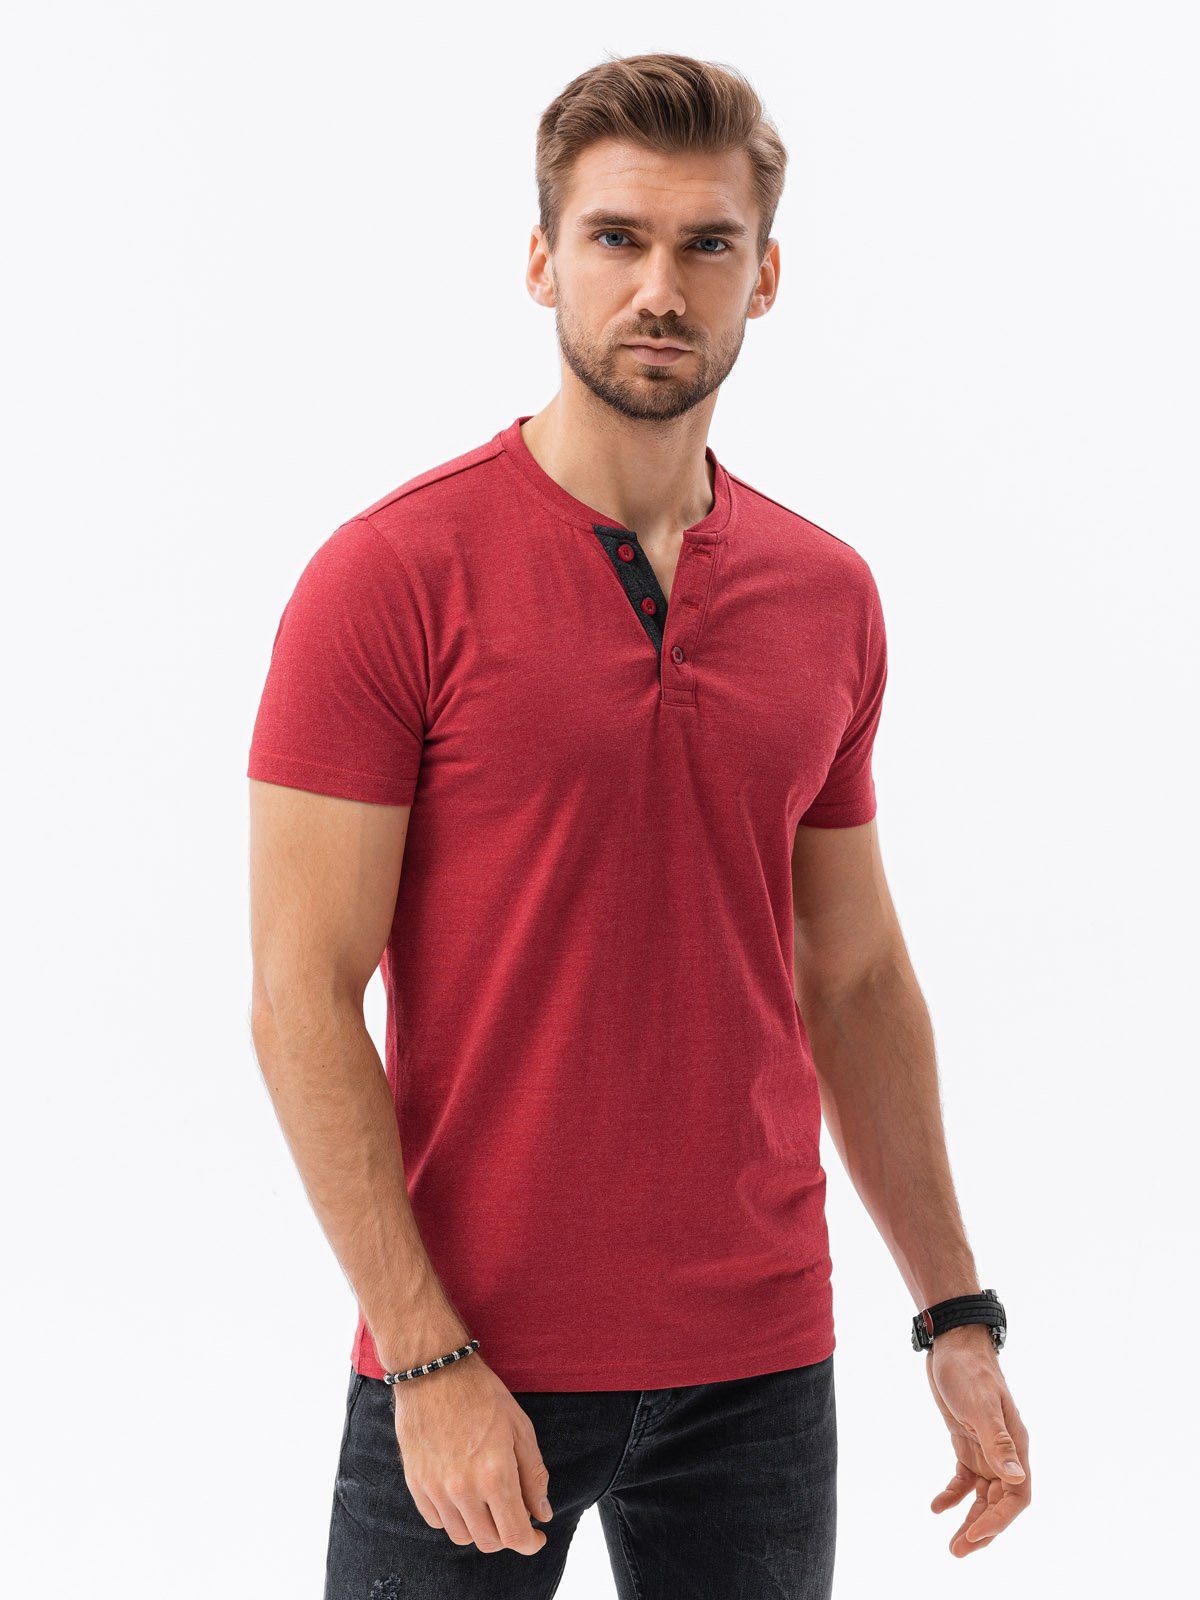 S1390 - Herren-T-Shirt OMBRE M T-Shirt rot meliert Einfarbiges